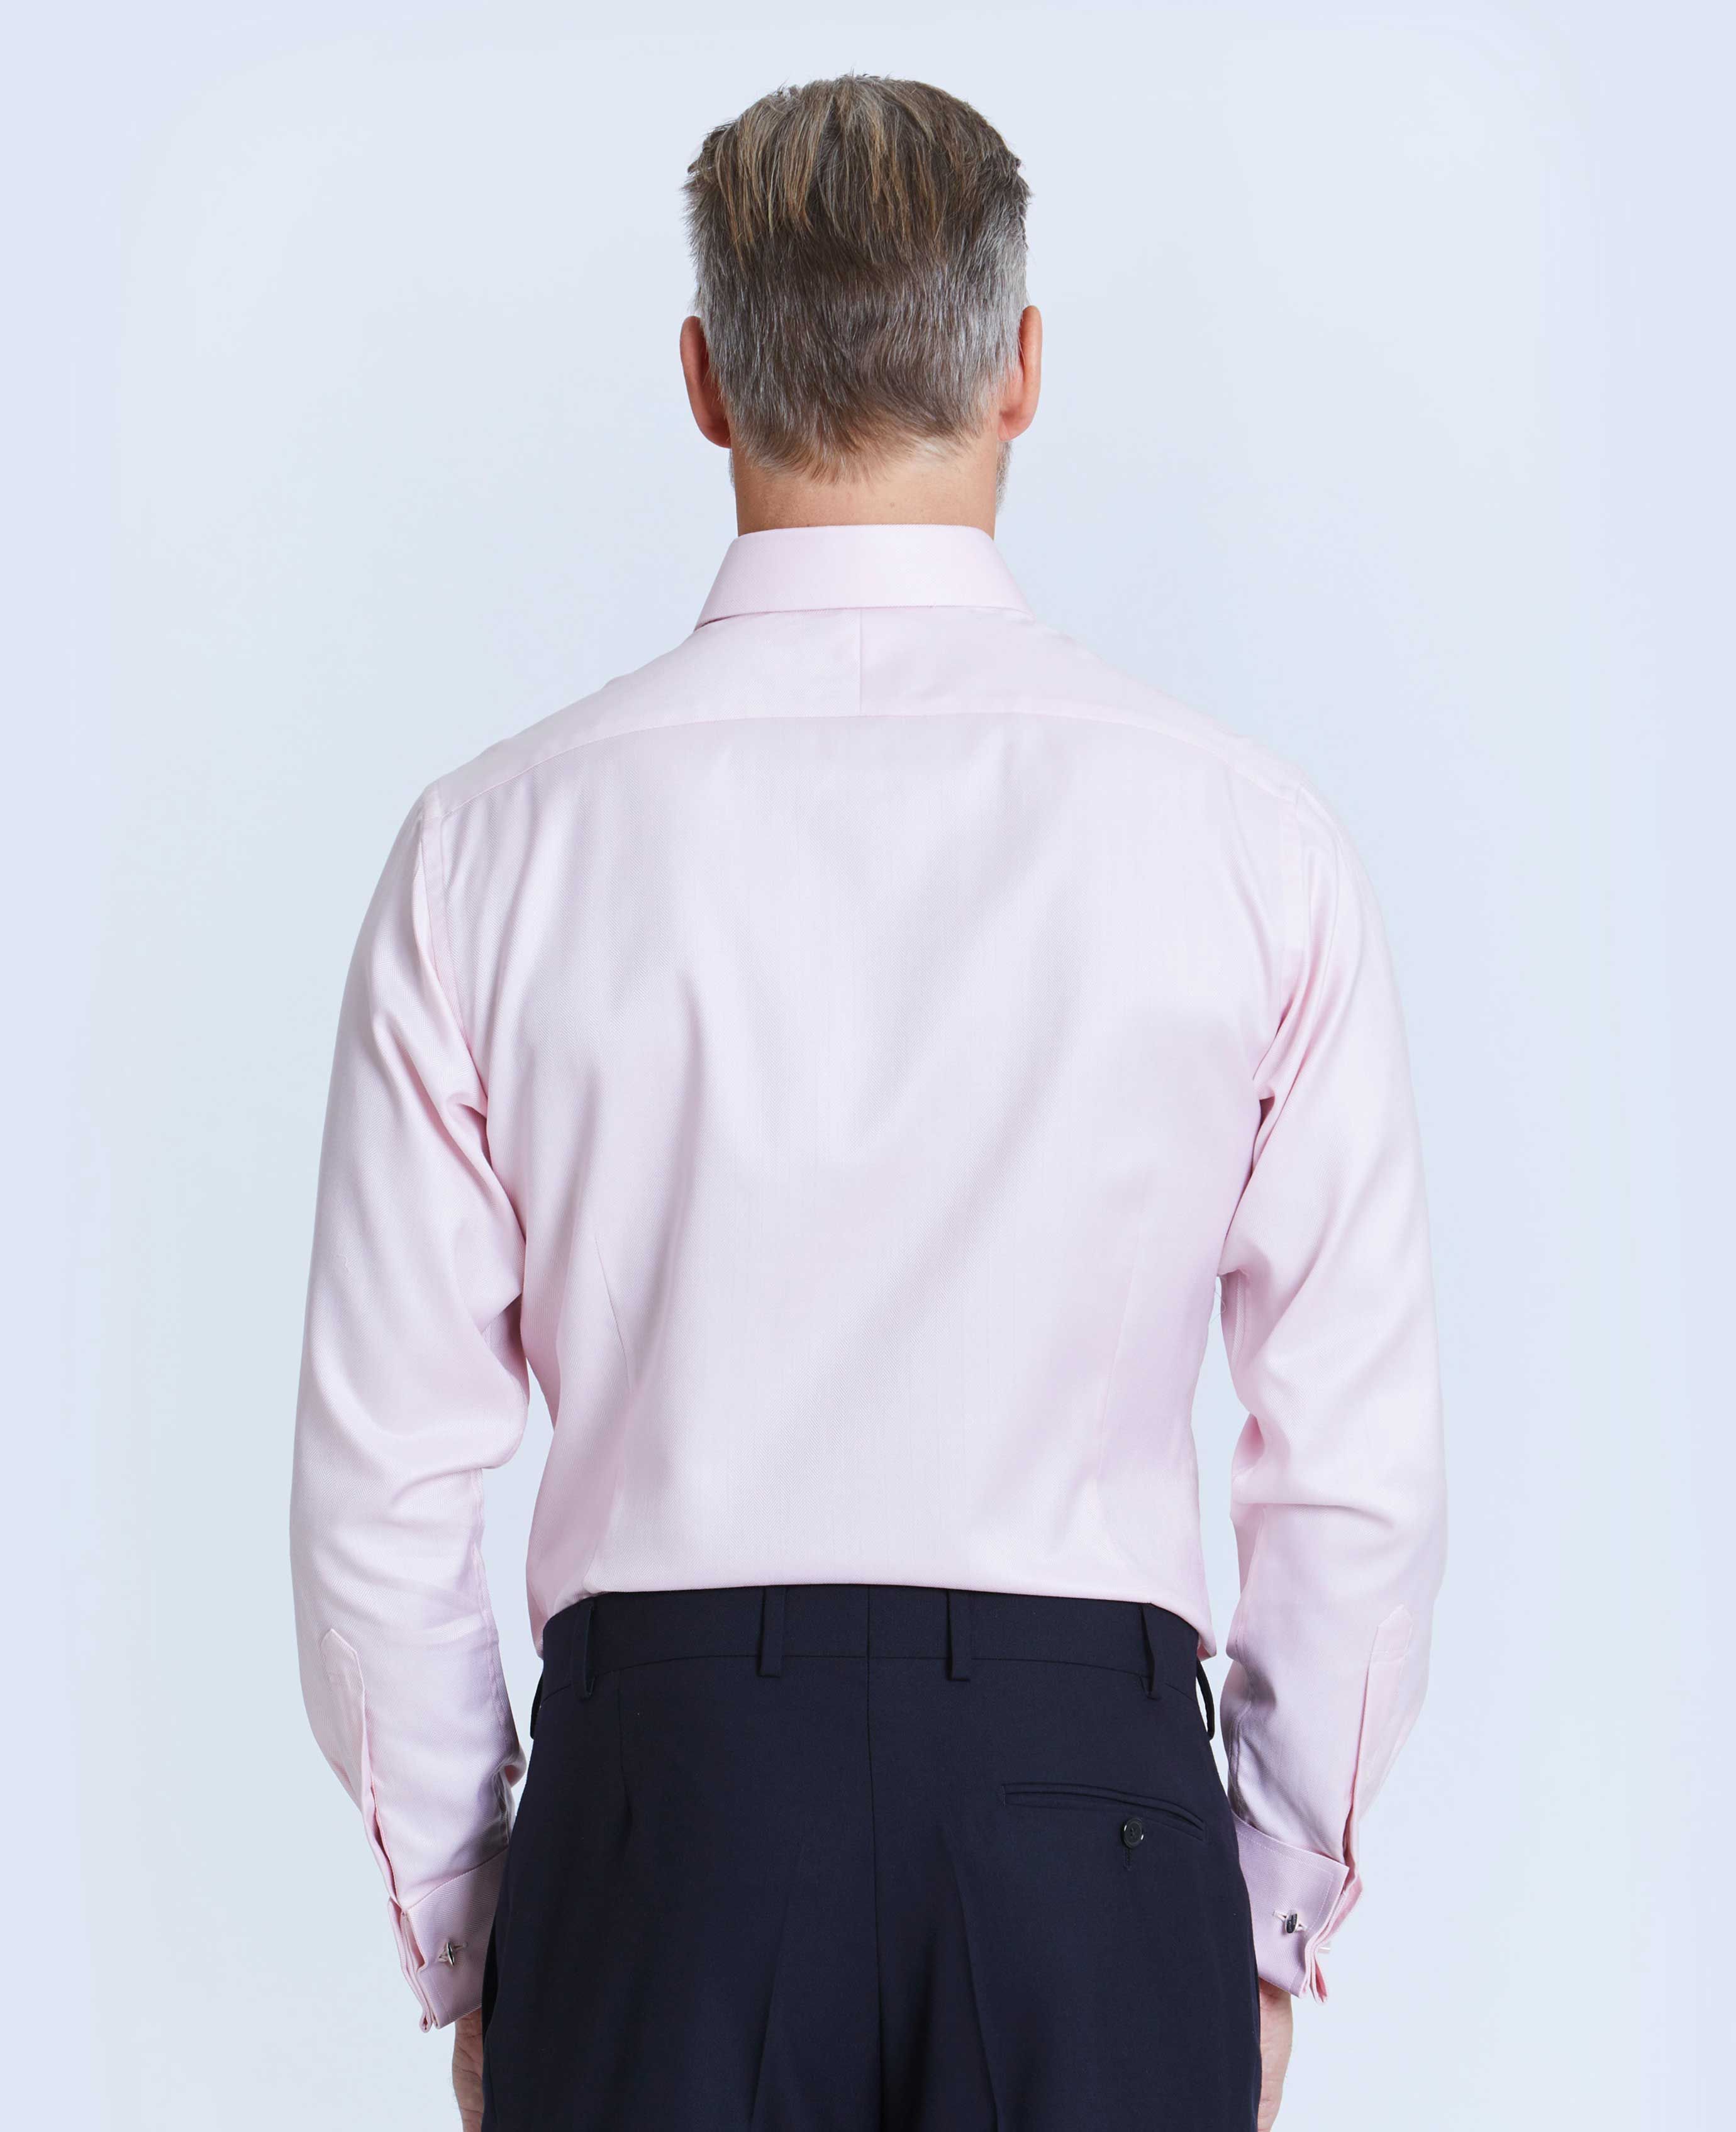 thomas pink dress shirts for men